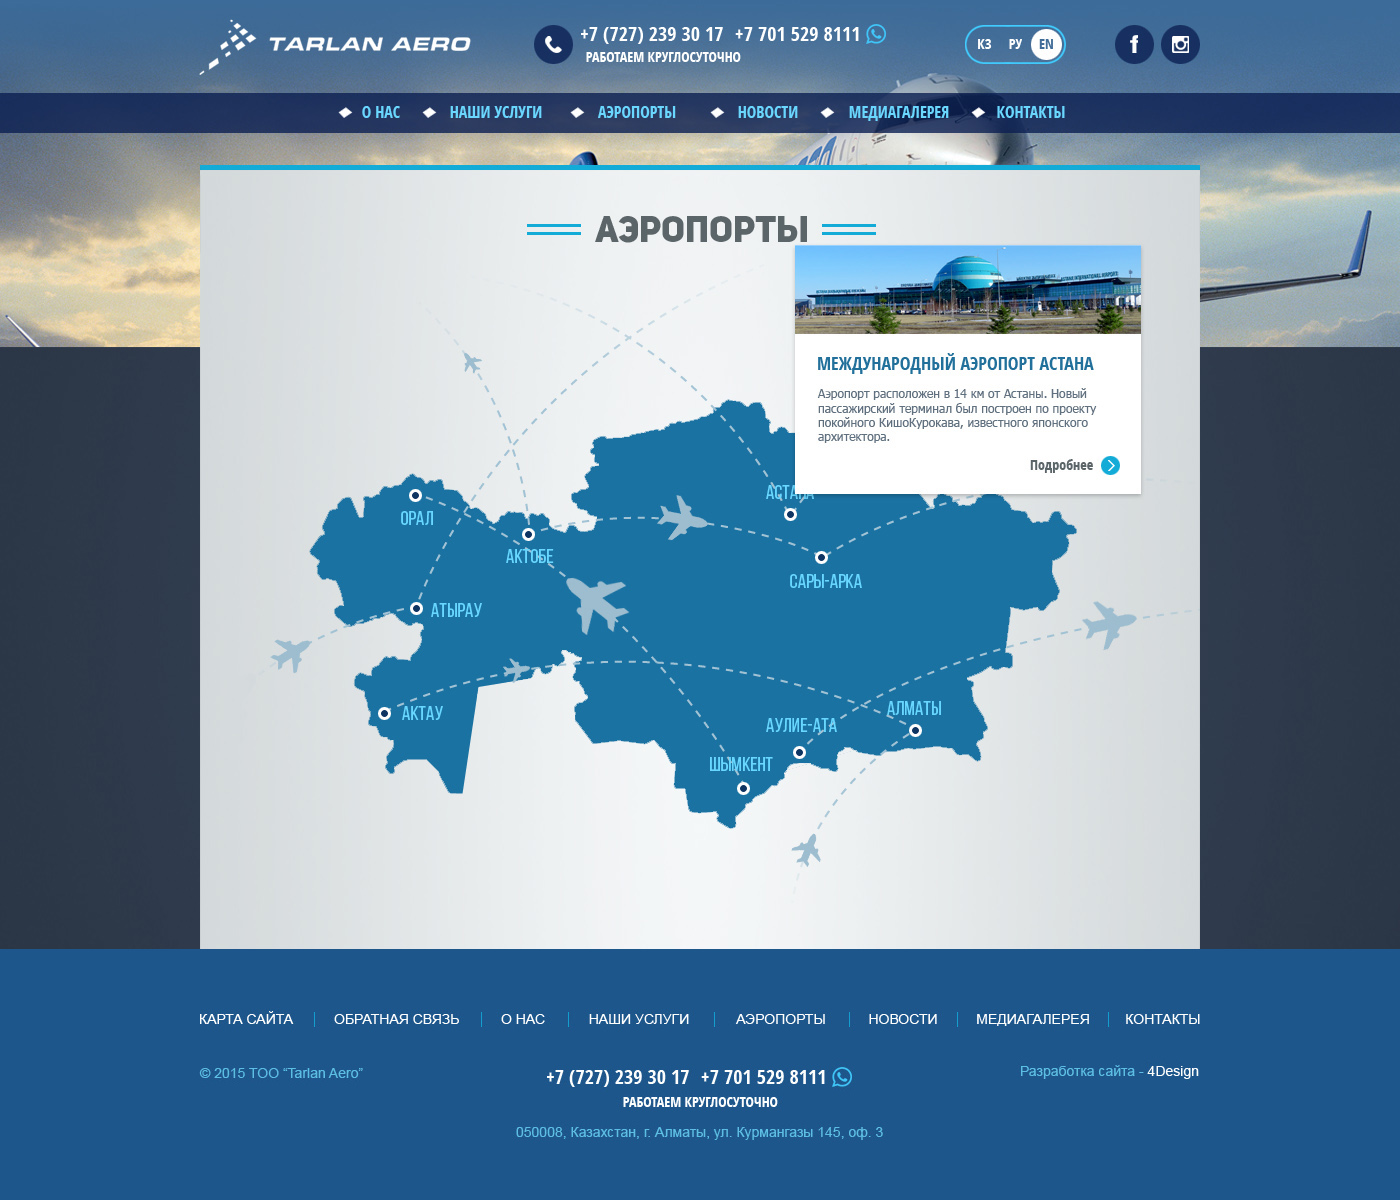 Разработка презентационного сайта для компании «Tarlan Aero»